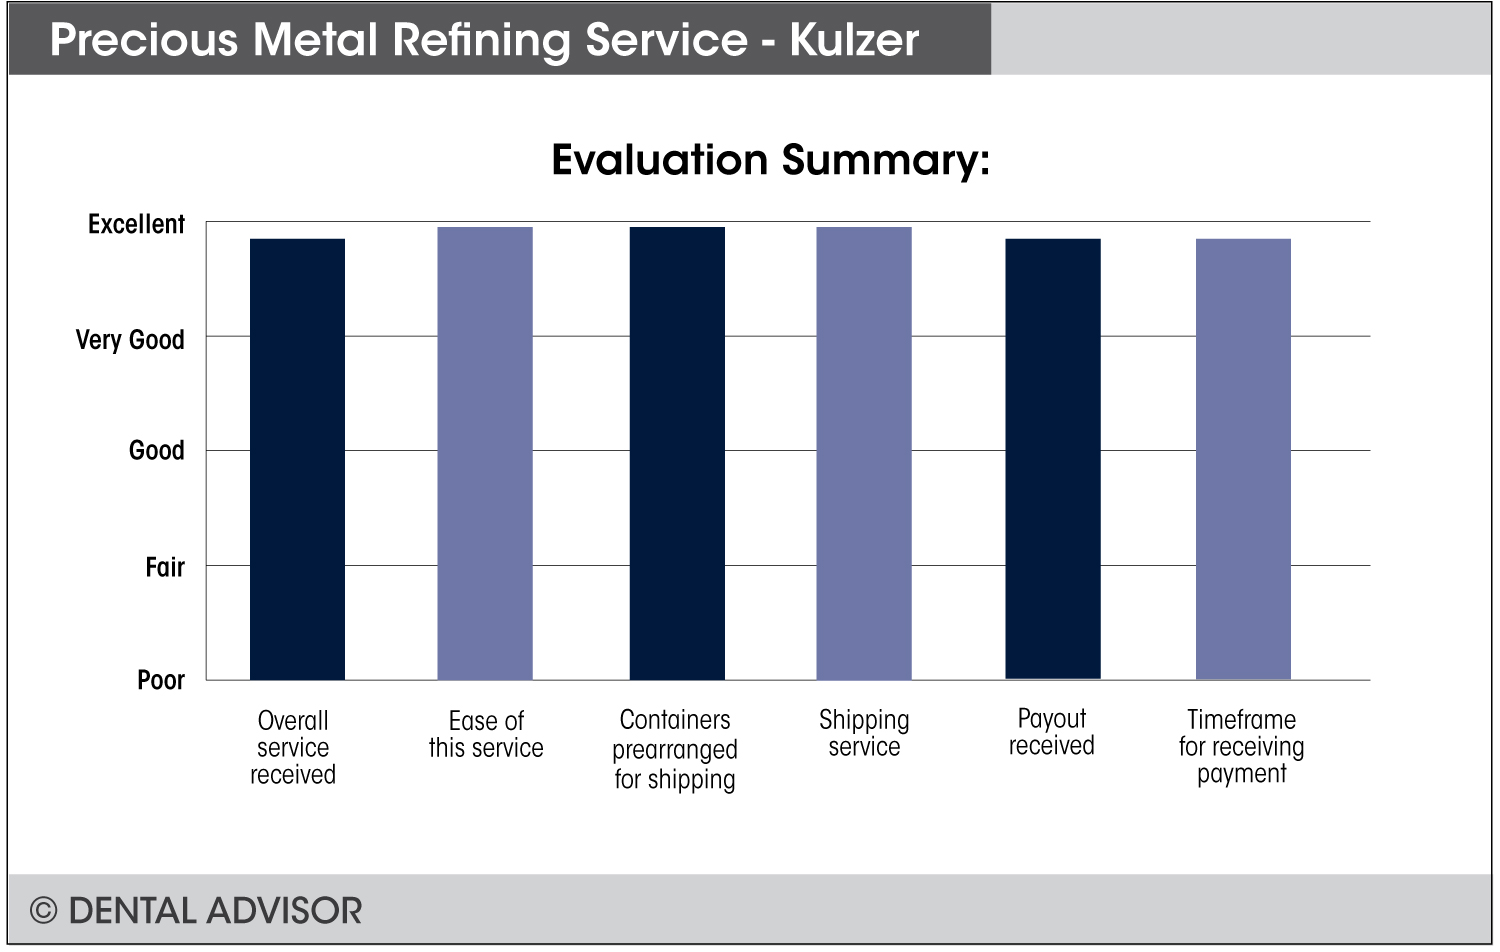 Precious-Metal-Refining-Kulzer+summary